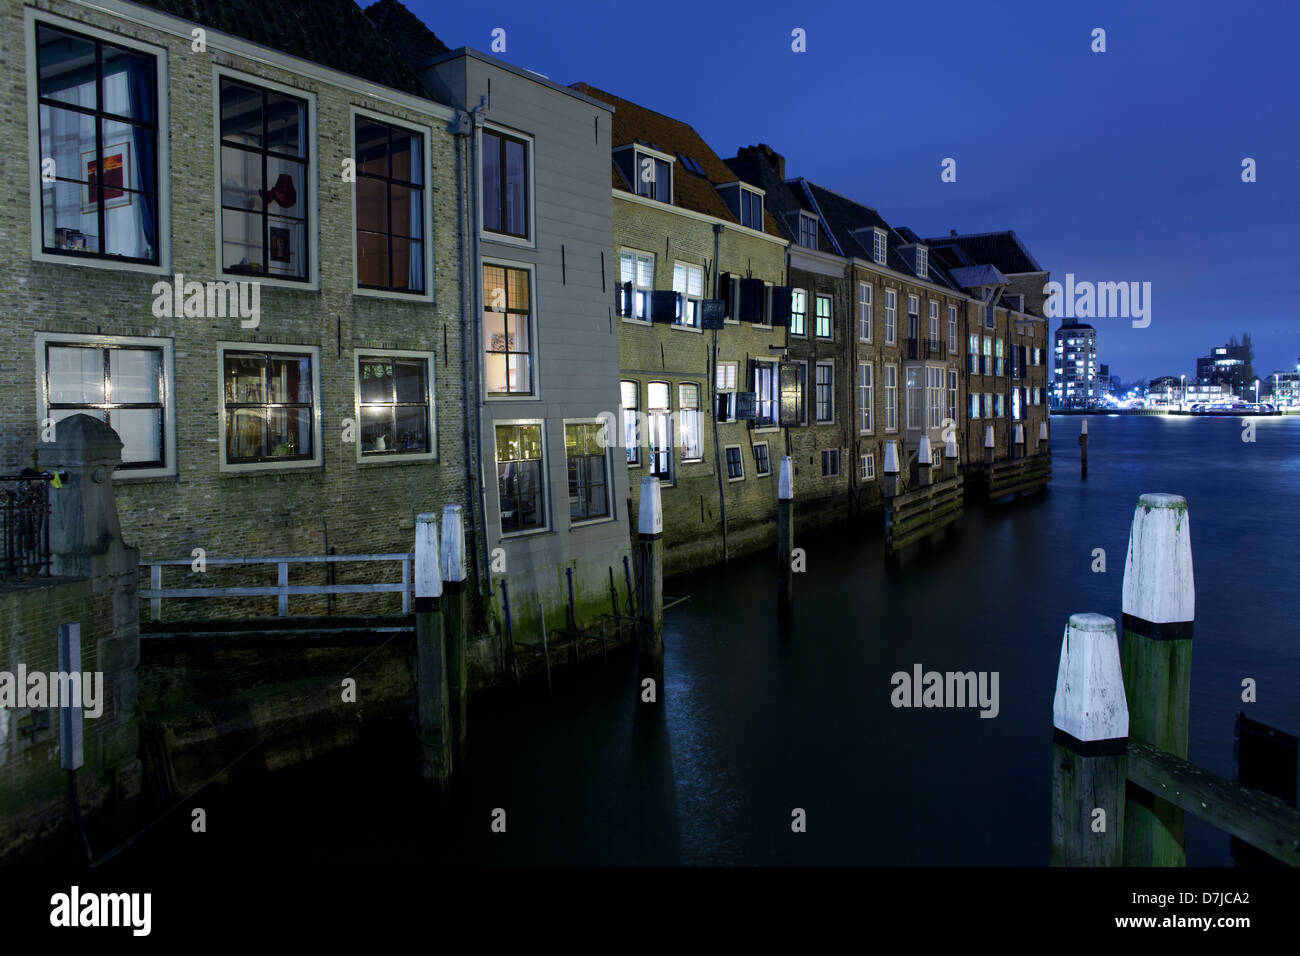 Le centre-ville de la vieille ville de Dordrecht, Pays-Bas Banque D'Images